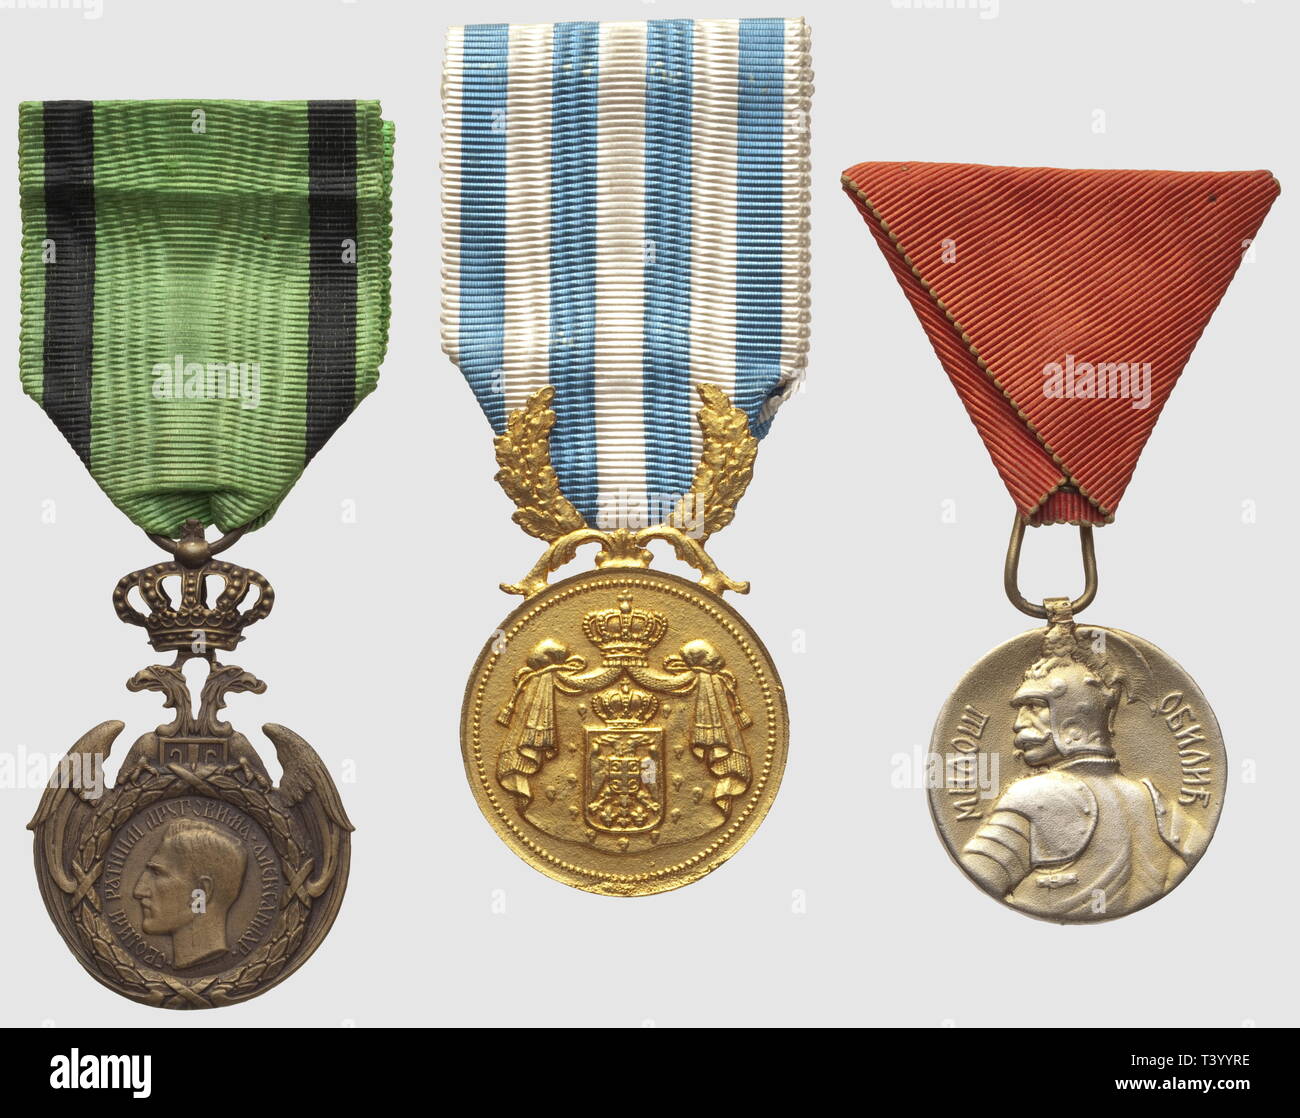 Trois médailles d'origine Serbe,. Médaille Militaire, Médaille Commémorative de la Campagne d'Neph 1915 et Médaille pour la Bravoure 1885, Additional-Rights - Clearance-Info - Not-Available Stockfoto